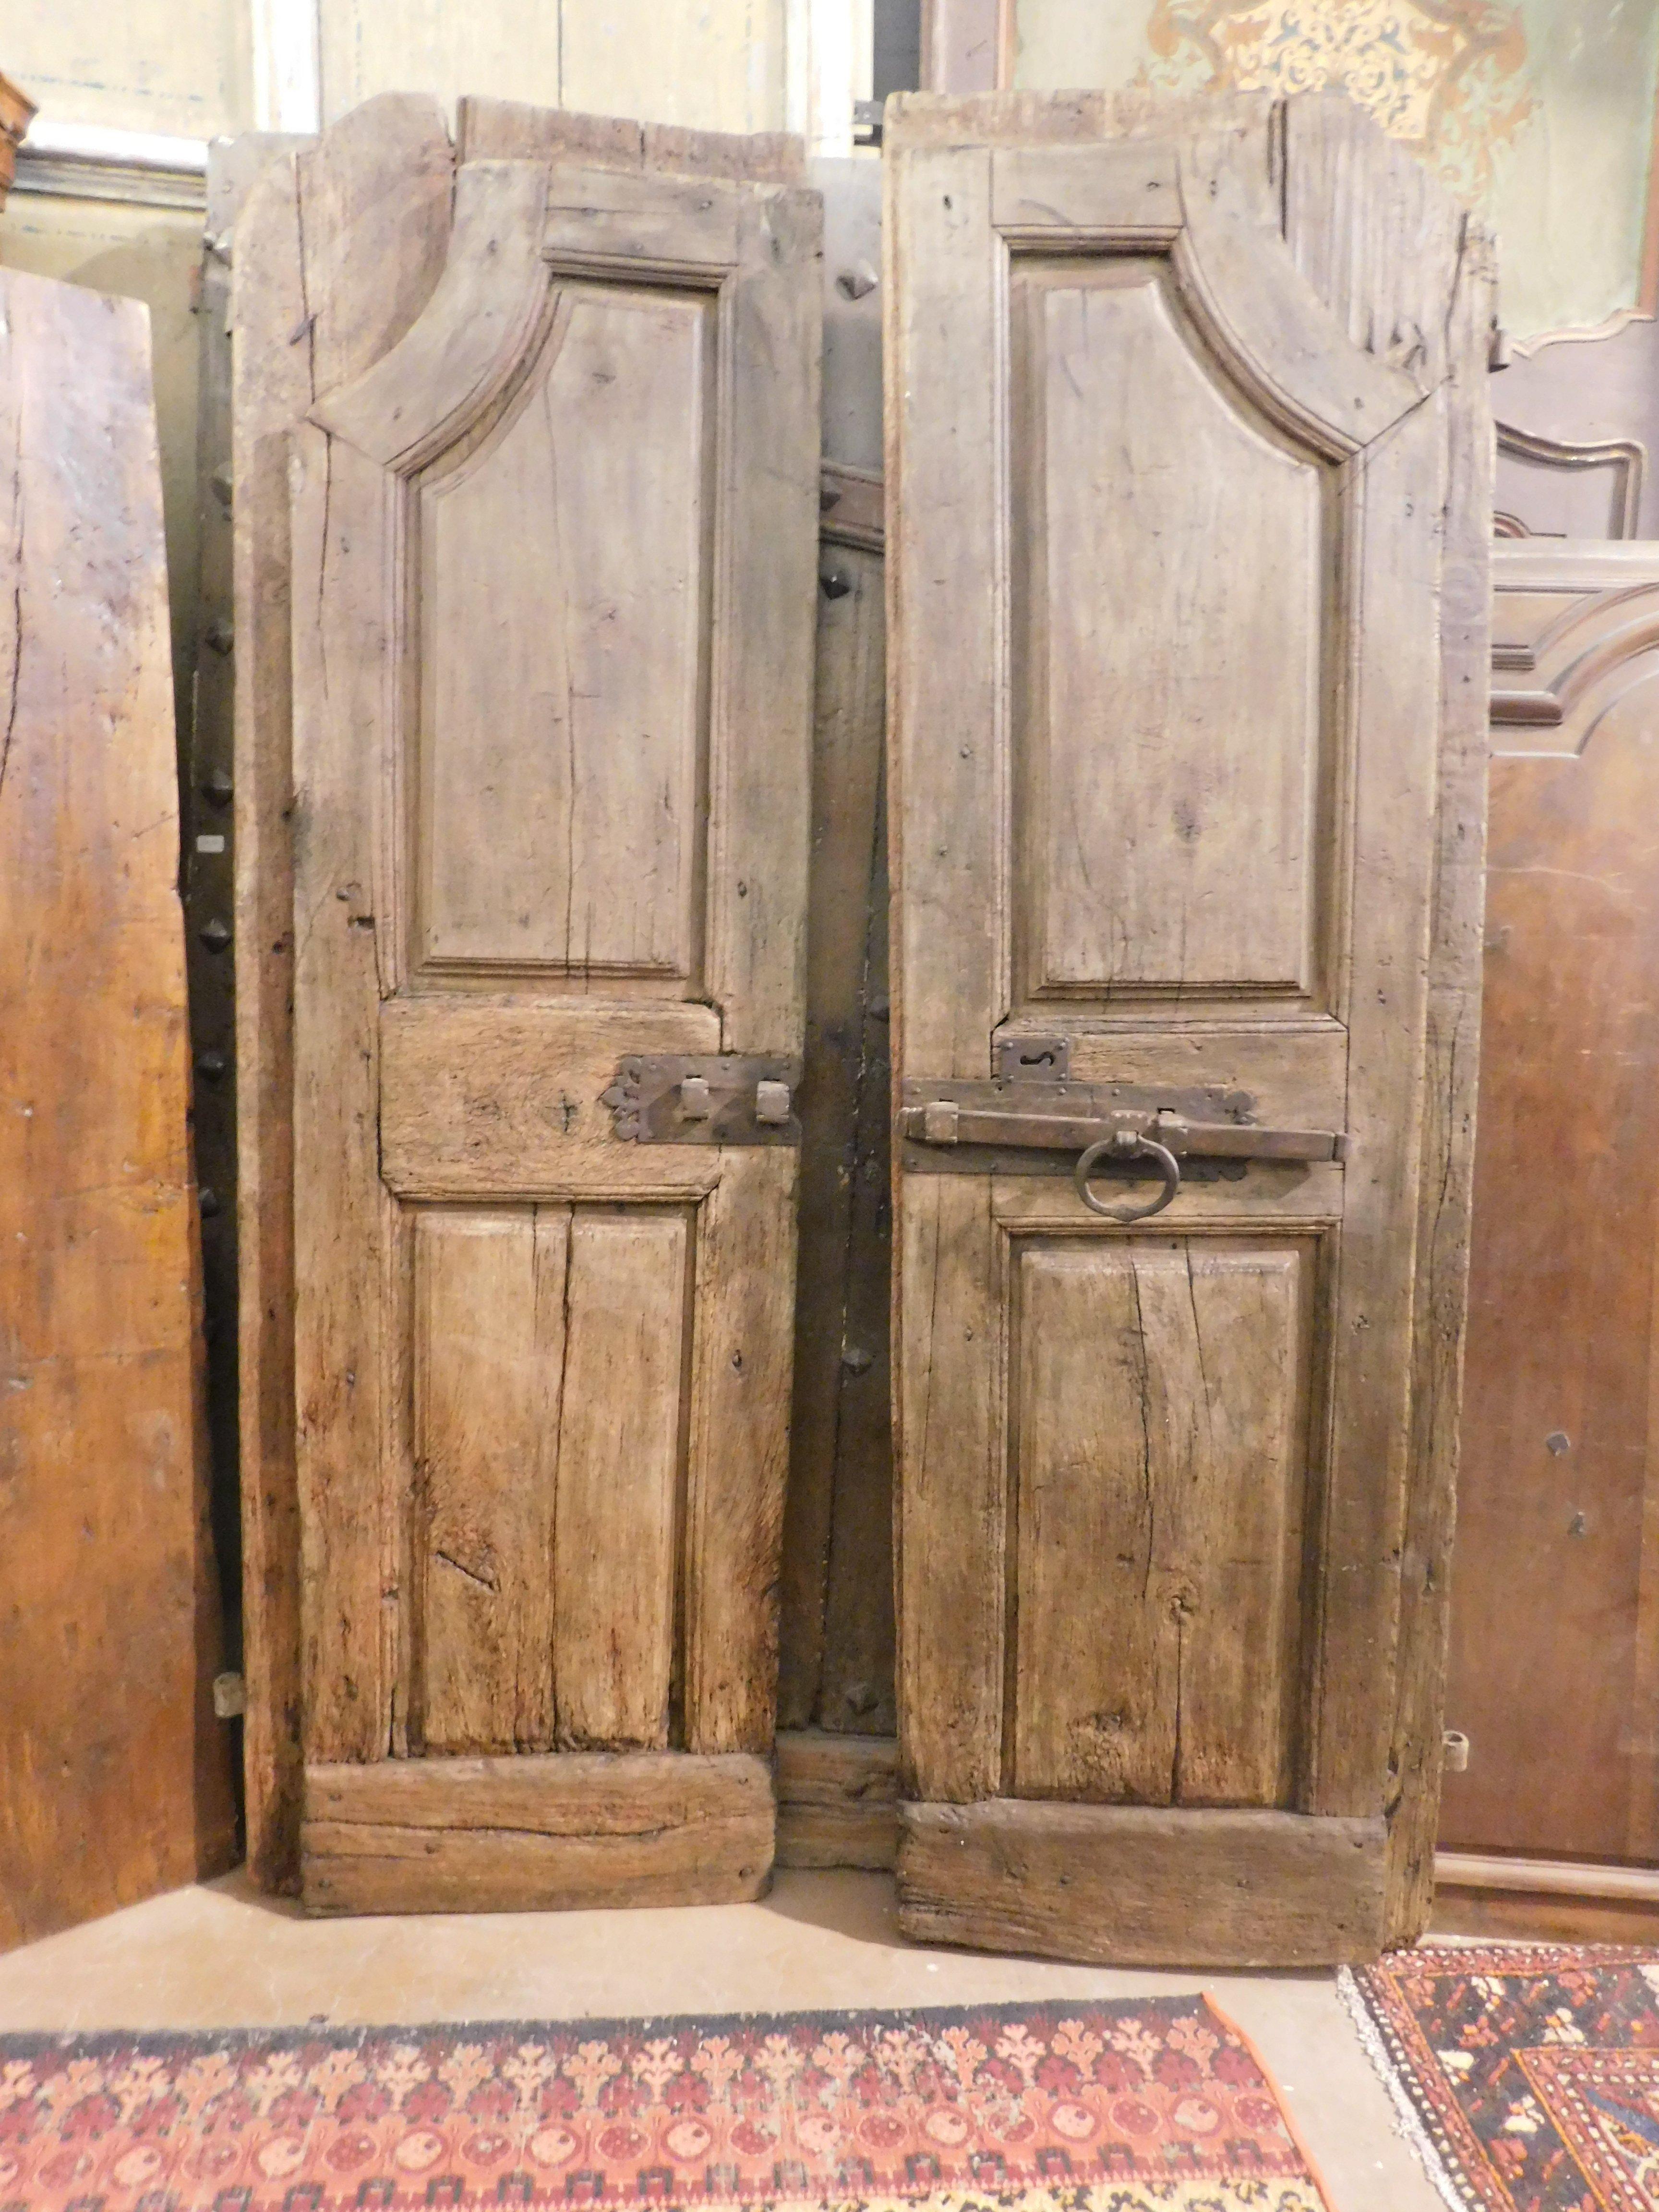 Antike Rundbogentür aus massivem Nussbaumholz, handgeschnitzt mit Bogenform und geschmolzenen Paneelen, gebaut im 18. Jahrhundert für ein Haus in Norditalien (Piemont), hat einen breiten Sims, da sie sich durch Schieben öffnete, und bewahrt noch